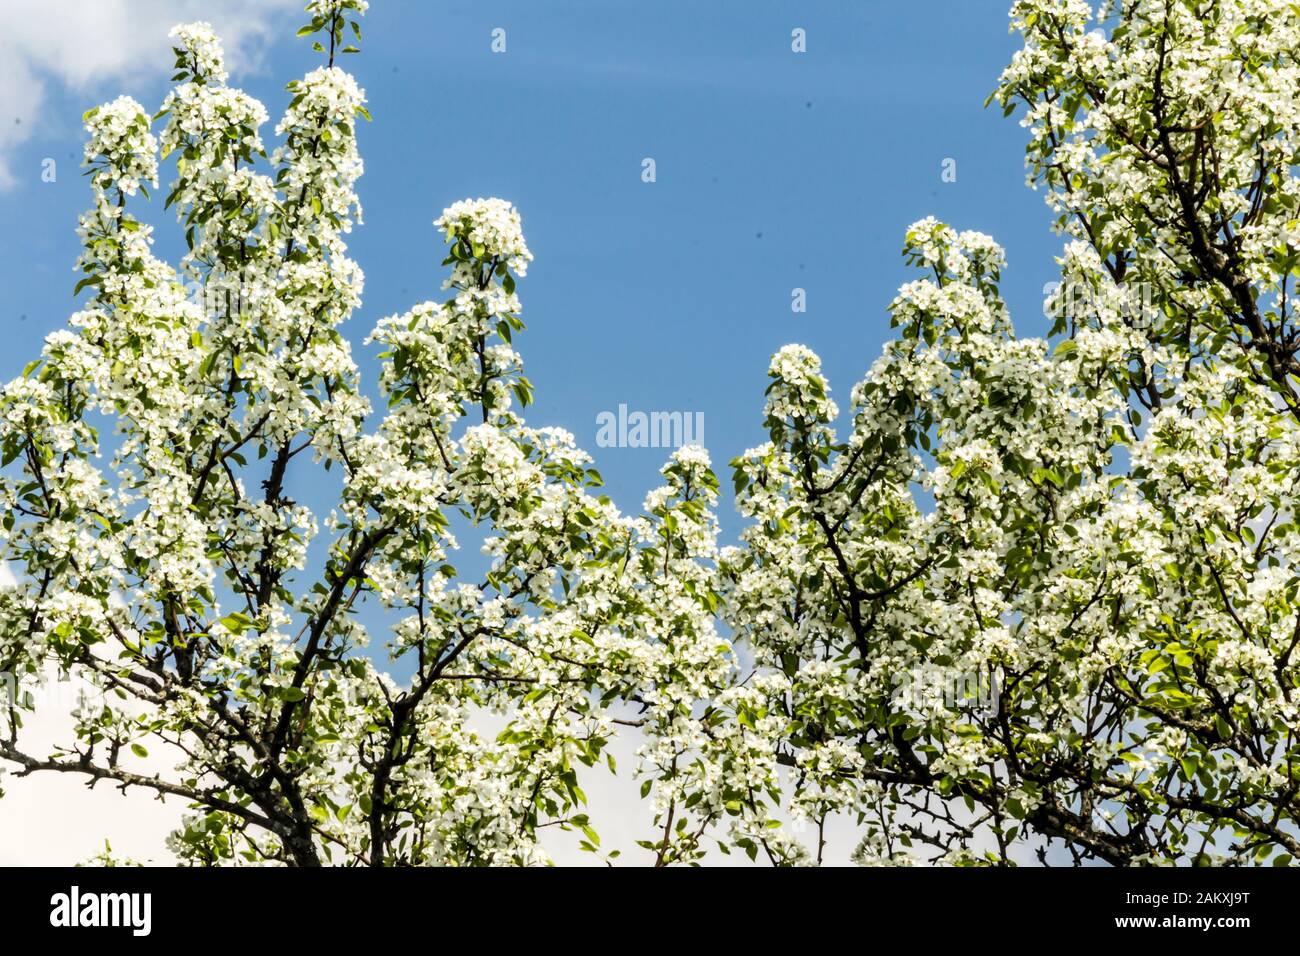 Début du printemps. Branches d'un arbre de poire recouvert de fleurs blanches.Macro photo.Bon arrière-plan pour un site sur un jardin de village, des plantes et des arbres fruitiers. Banque D'Images